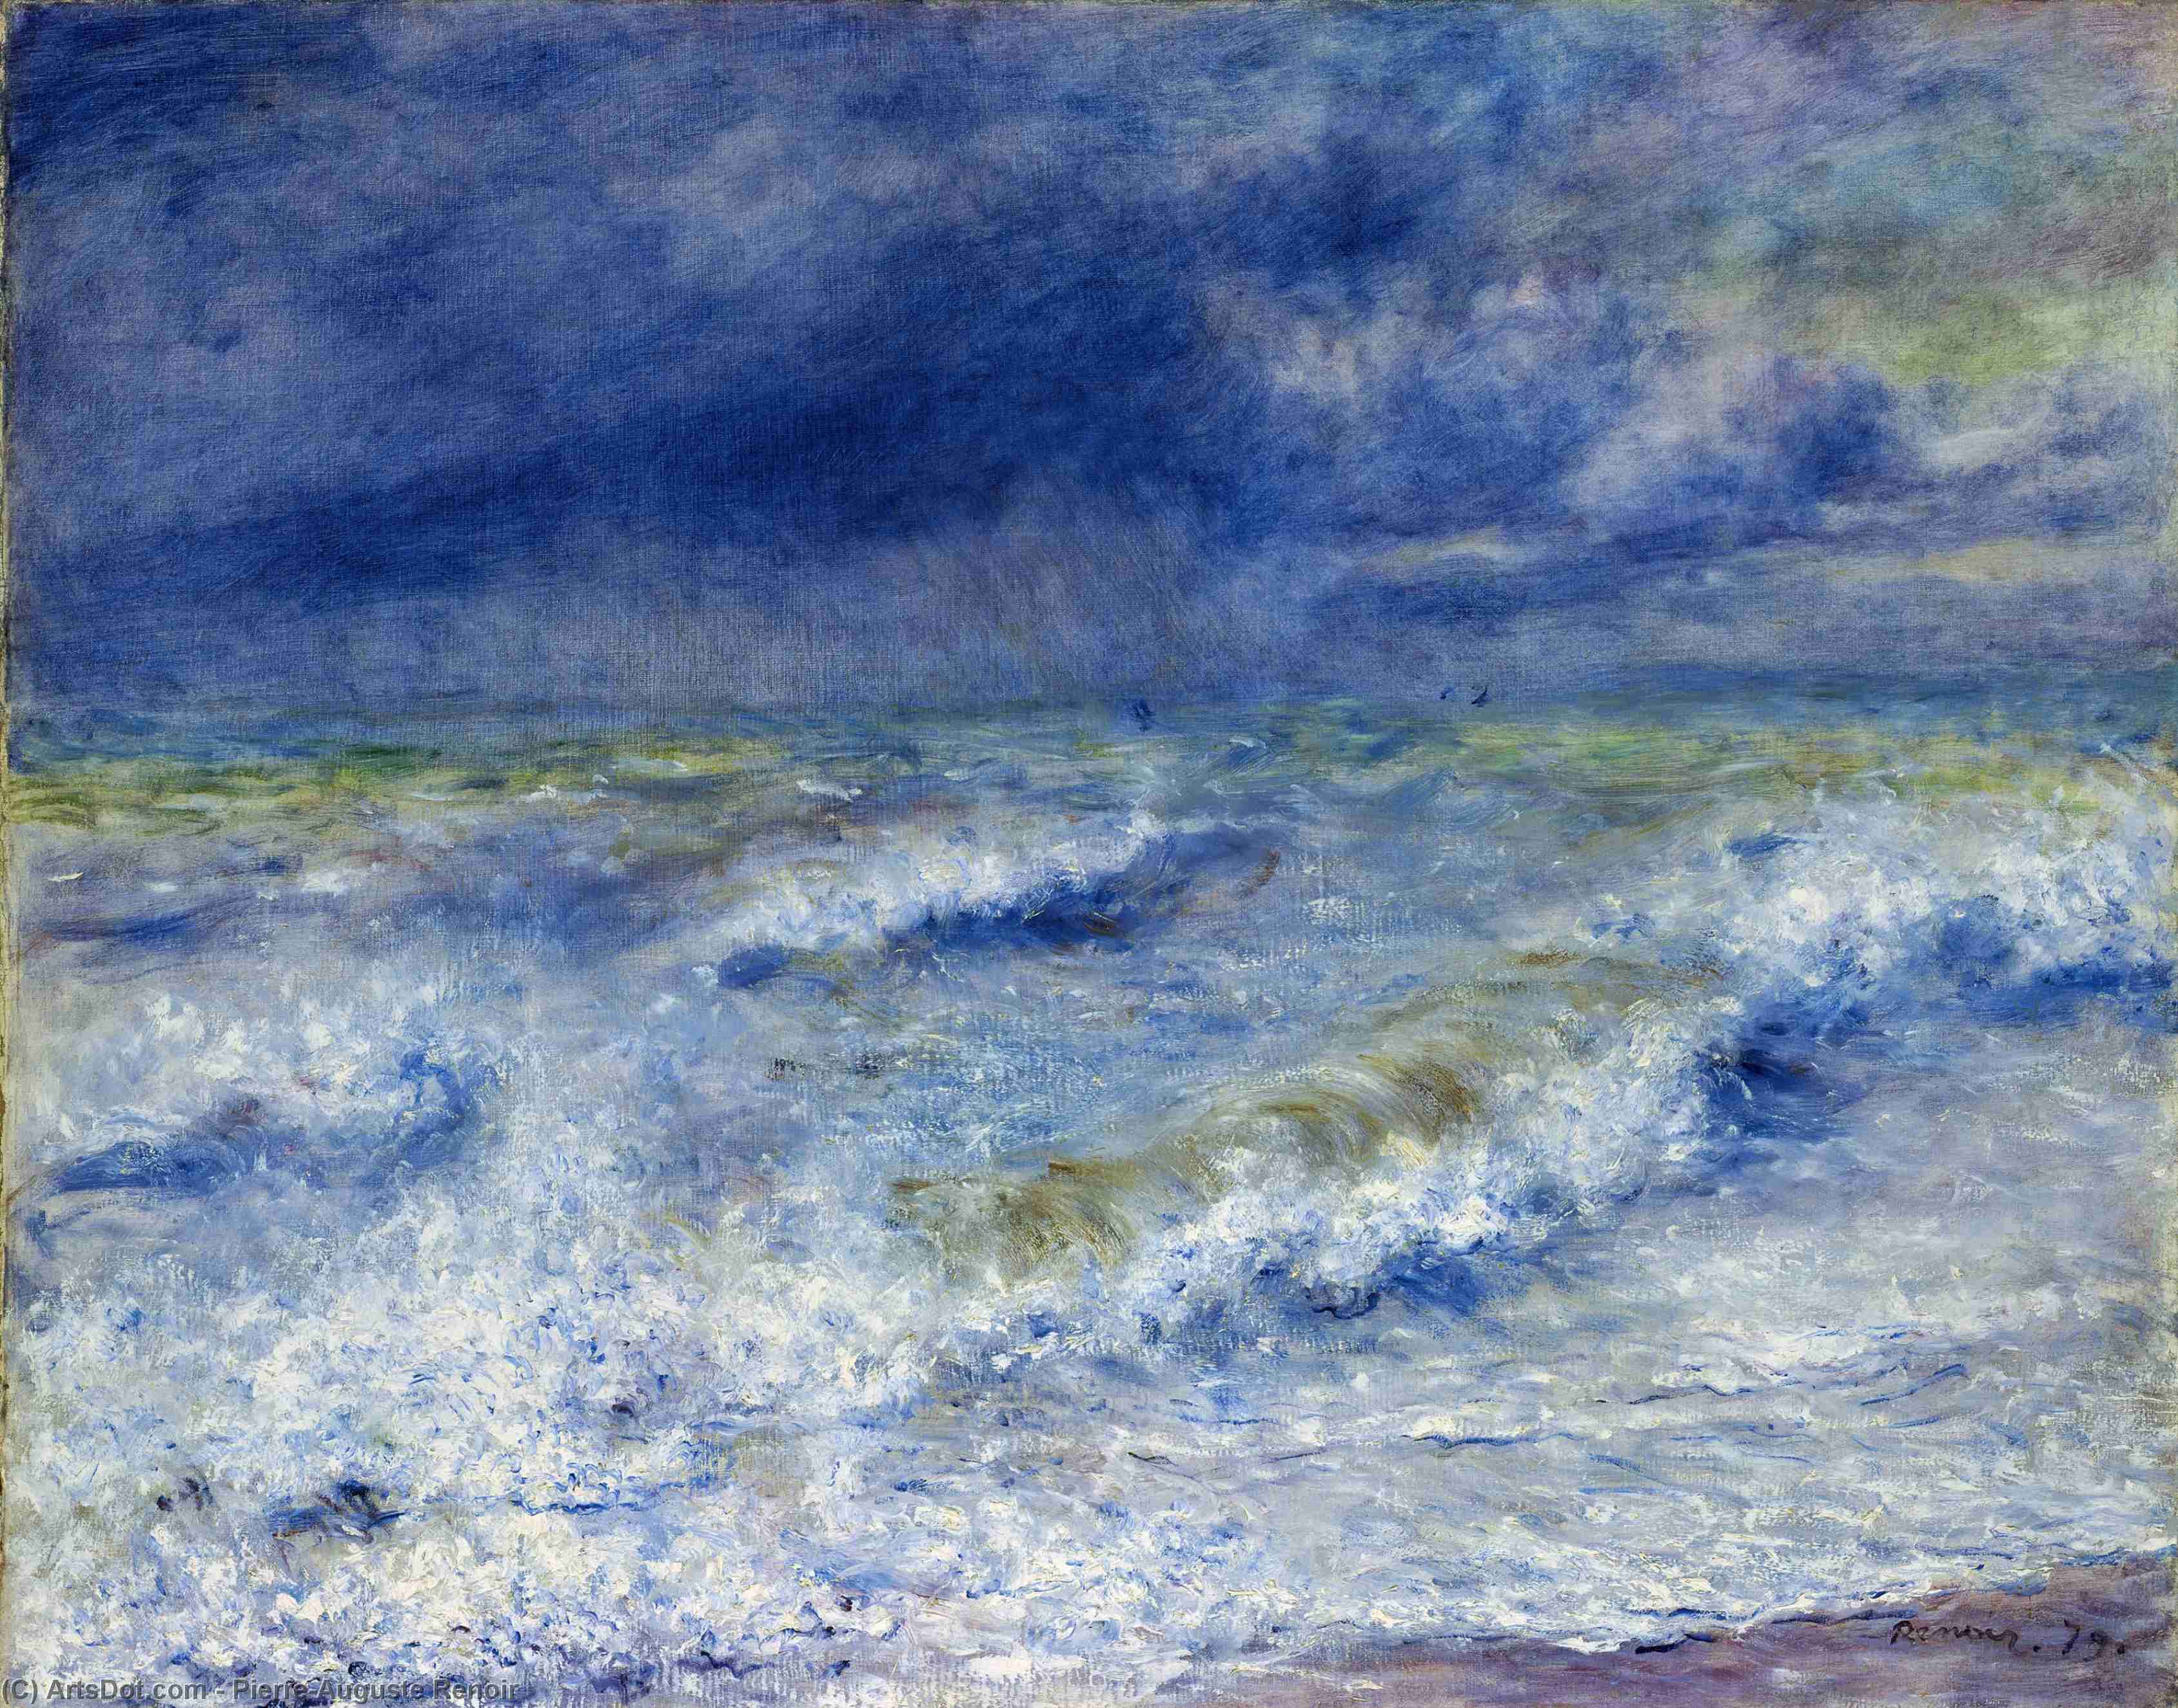 WikiOO.org - Encyclopedia of Fine Arts - Malba, Artwork Pierre-Auguste Renoir - Seascape